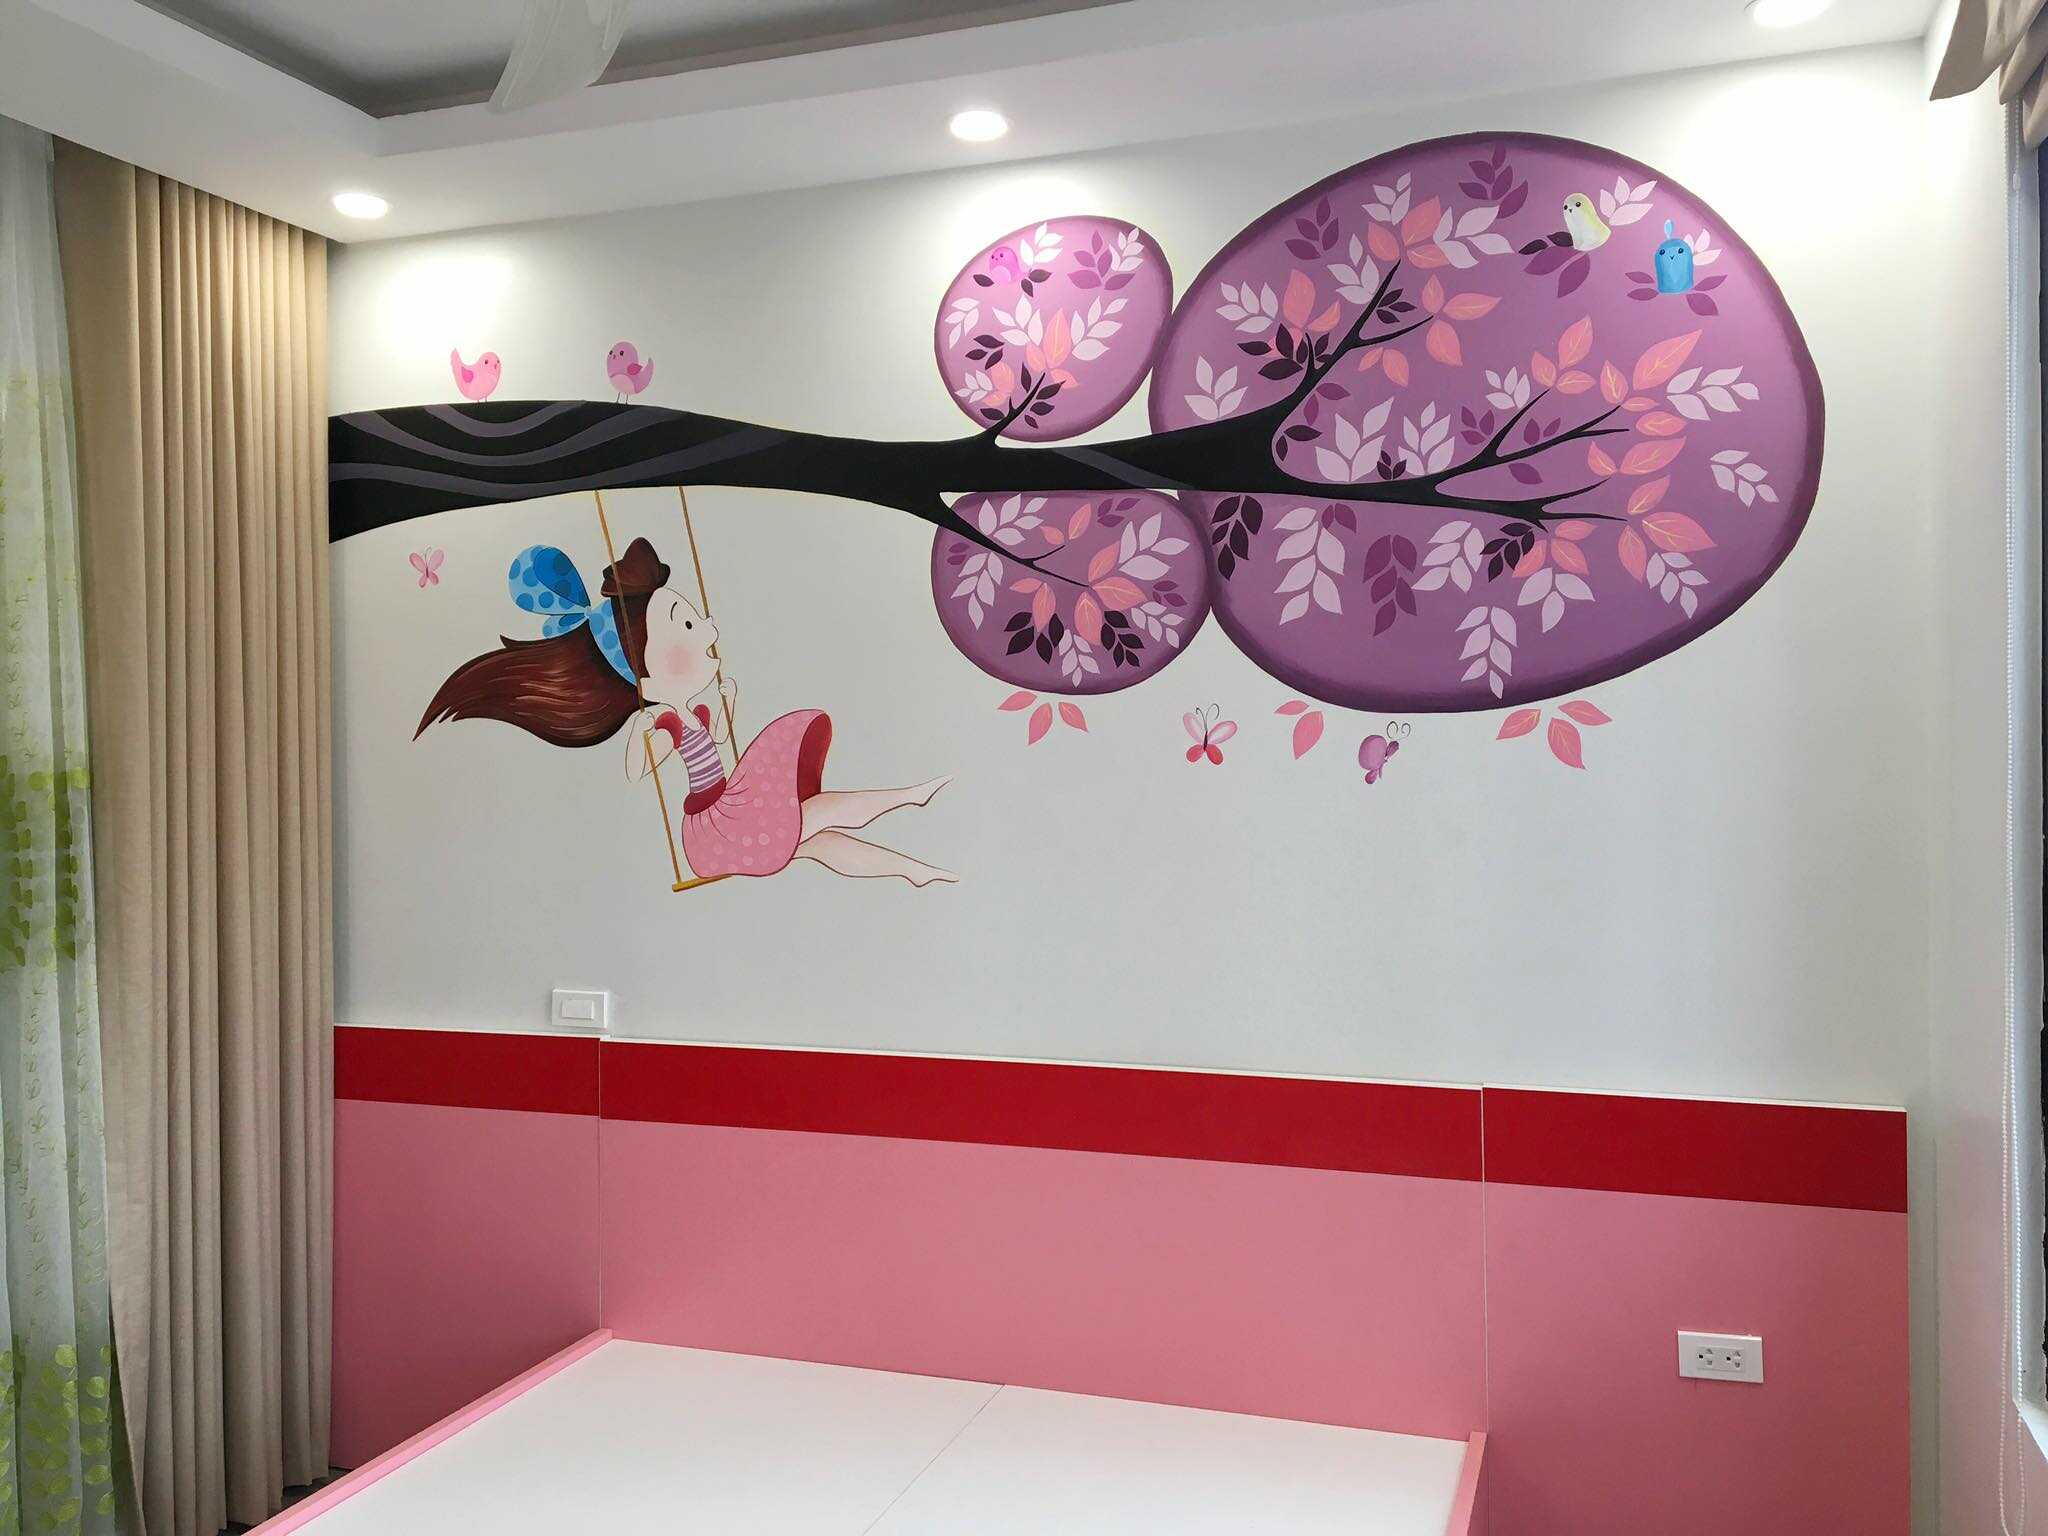 vẽ tranh tường phòng ngủ cho bé gái,vẽ tranh tường phòng bé,tranh tường phòng bé gái,tranh tường phòng ngủ bé gái,tranh nữ hoàng băng giá